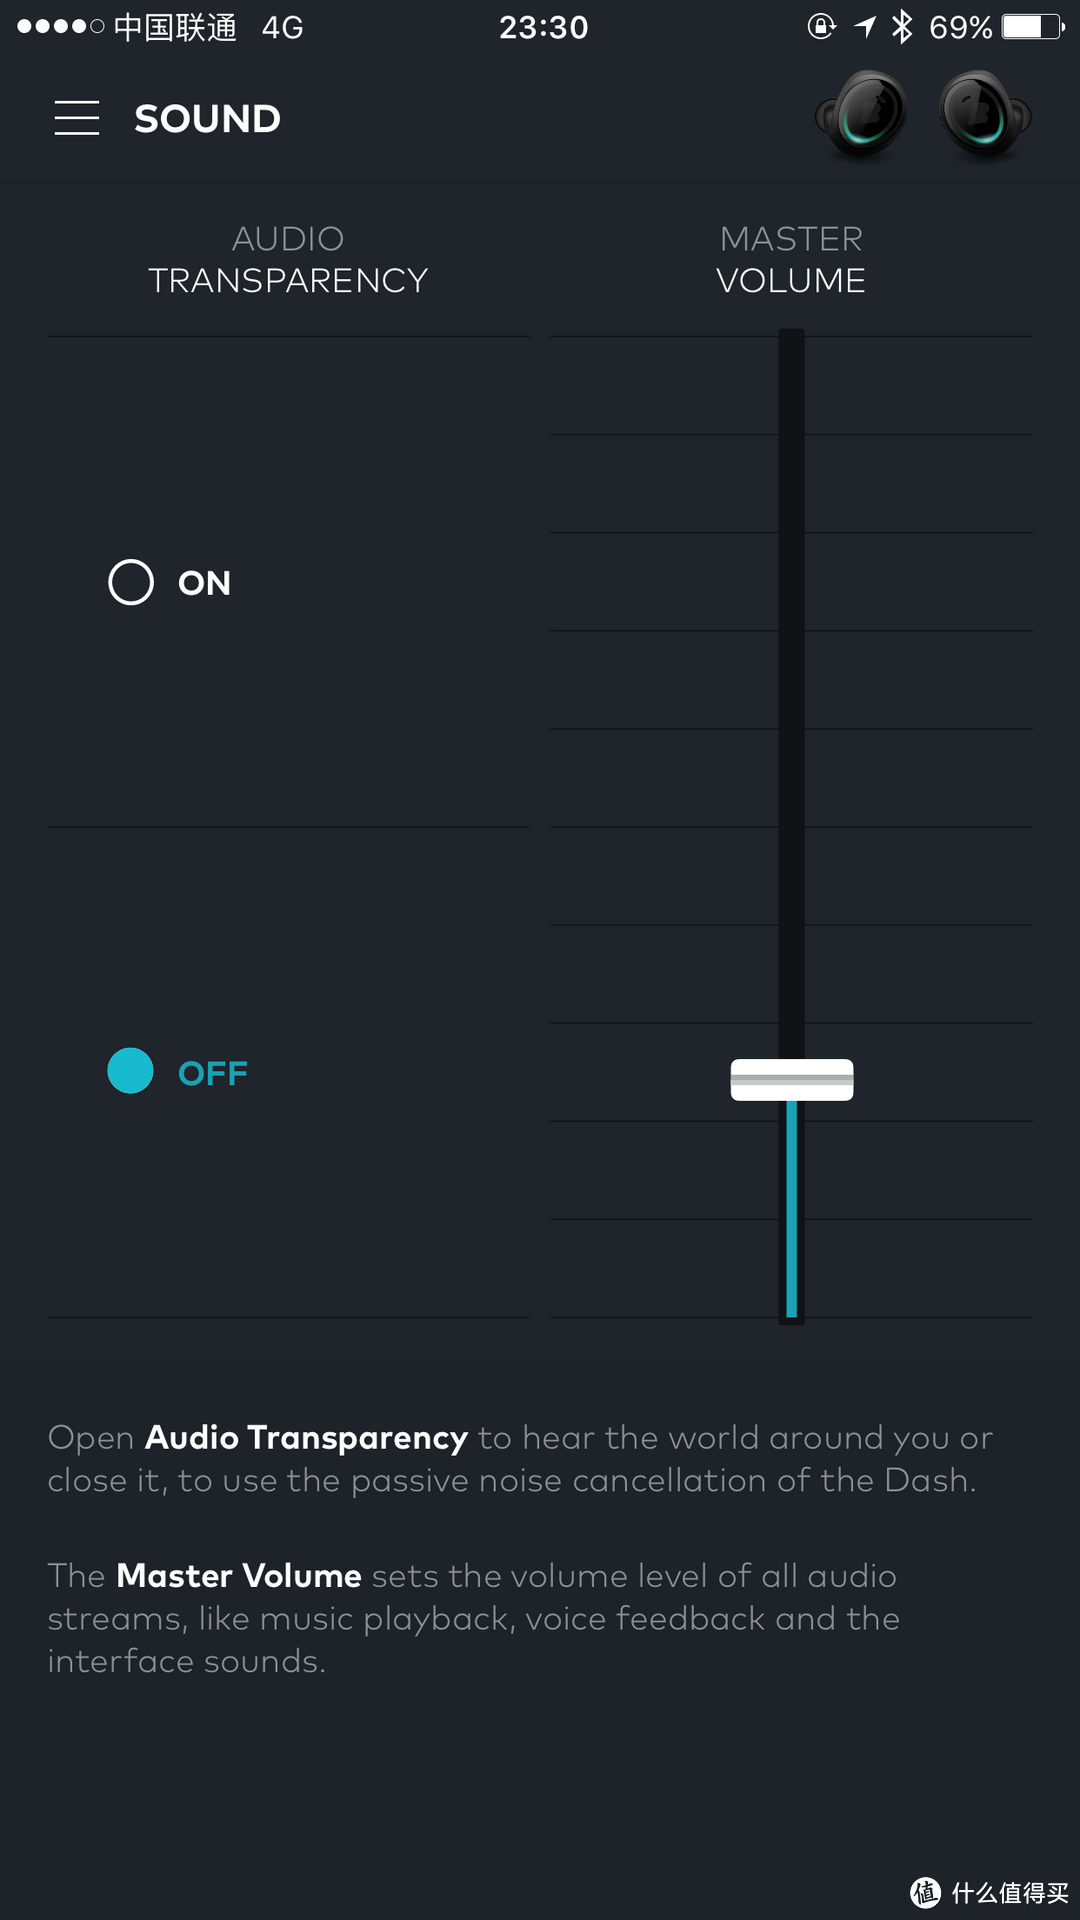 #本站首晒# 全球首款触控入耳式防水MP3 & 运动跟踪器:The Dash 无线蓝牙耳机 全网开箱真评测